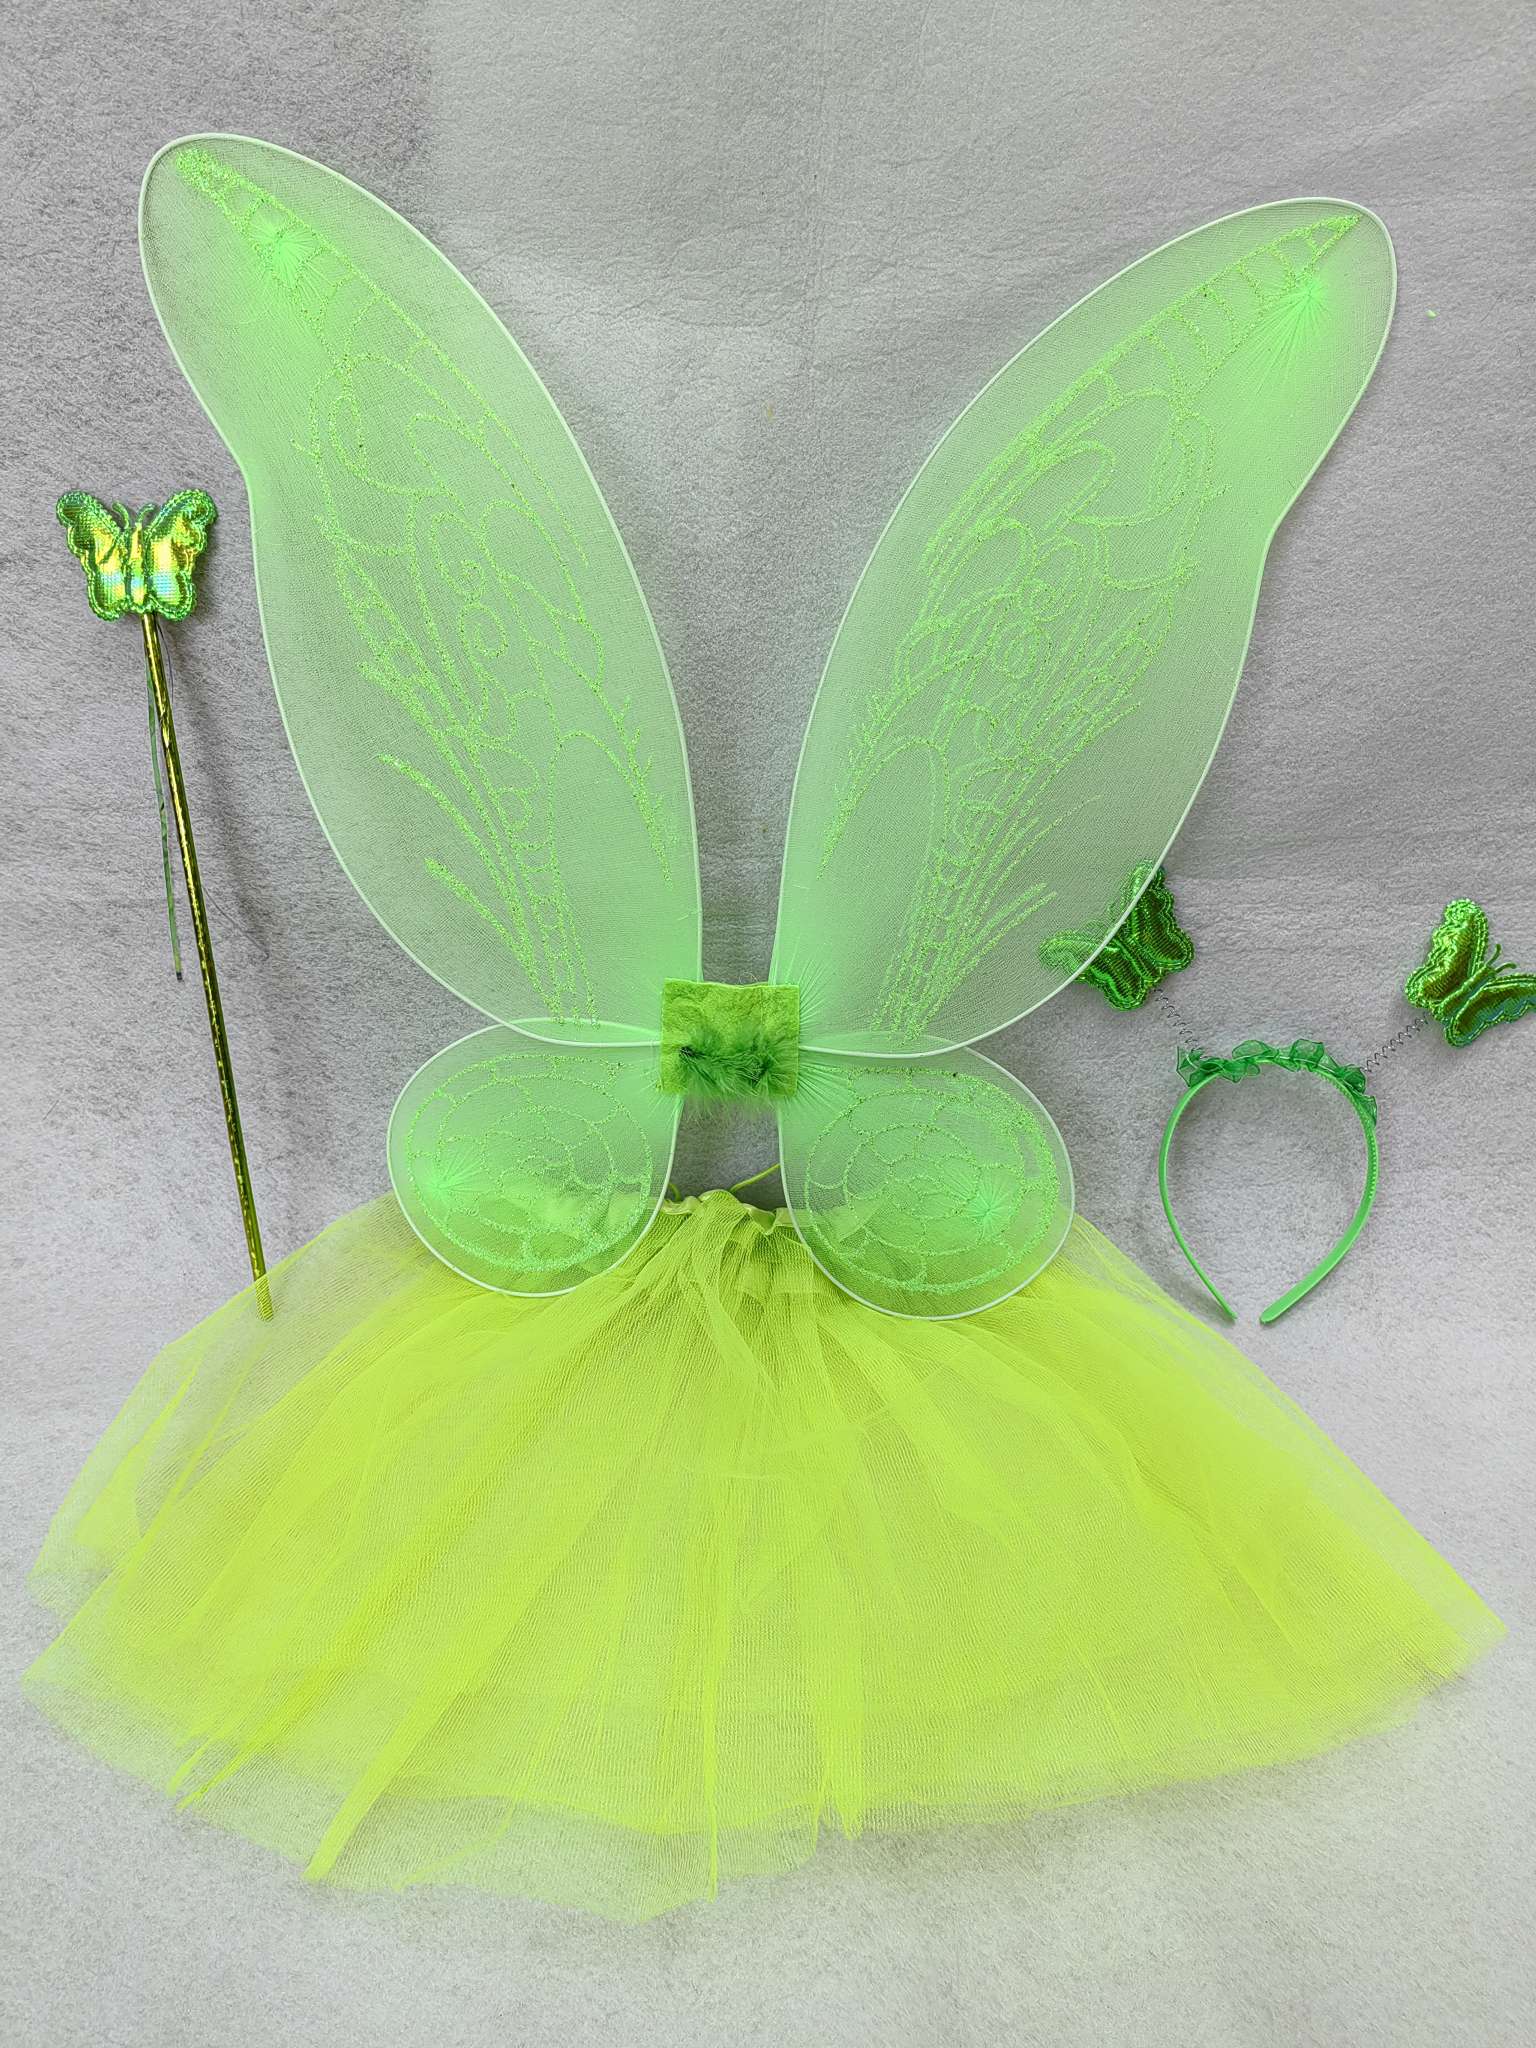 蝴蝶翅膀TUTU裙套装六一儿童节生日礼物派对用品厂家直销节日用品